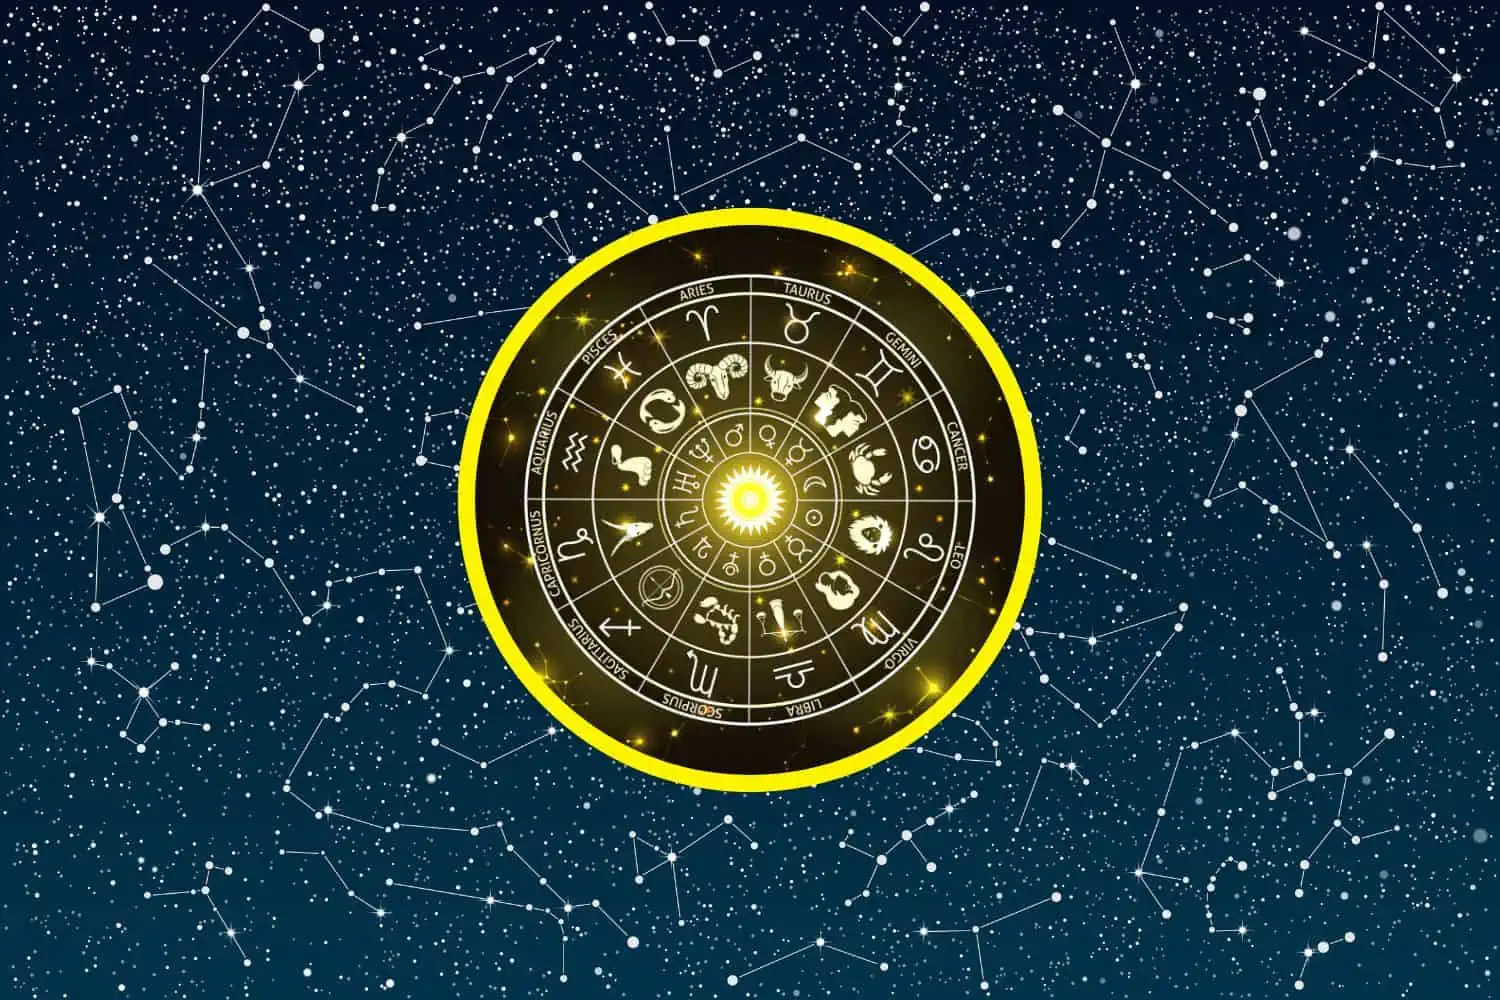 Today’s Free Horoscopes Monday 27 February 2023